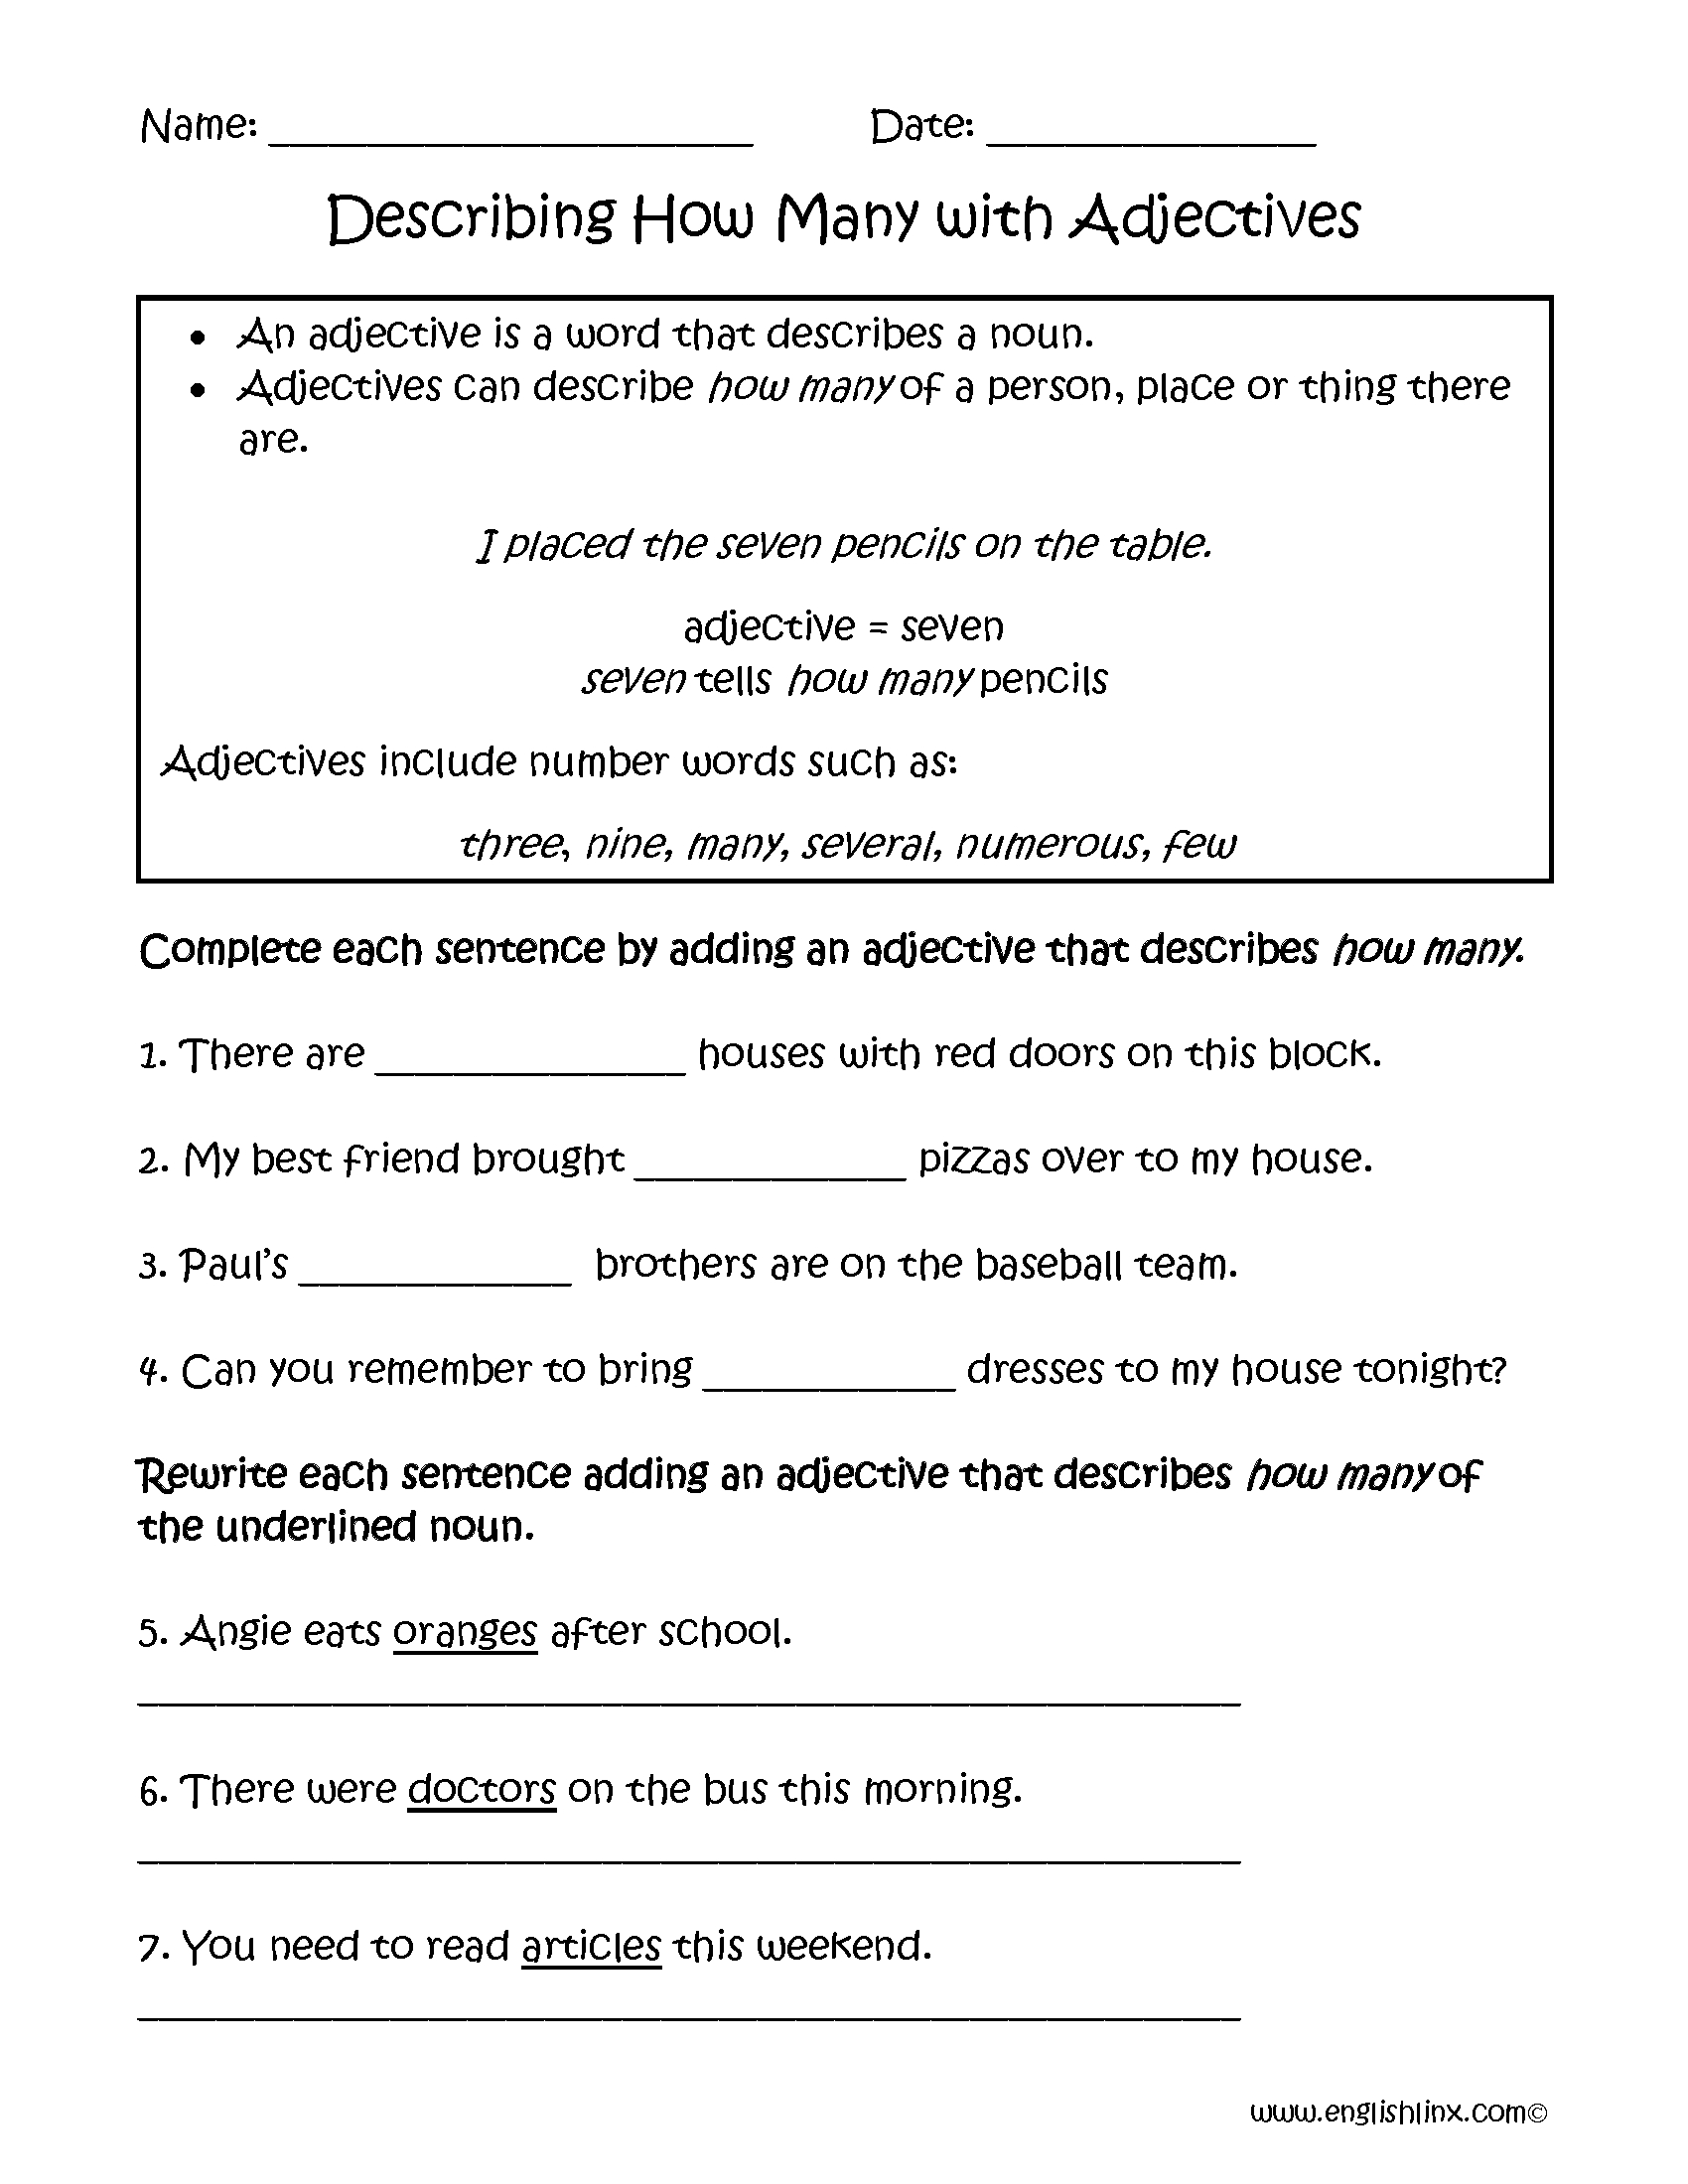 adjectives-worksheets-1st-2nd-3rd-grade-adjectives-worksheets